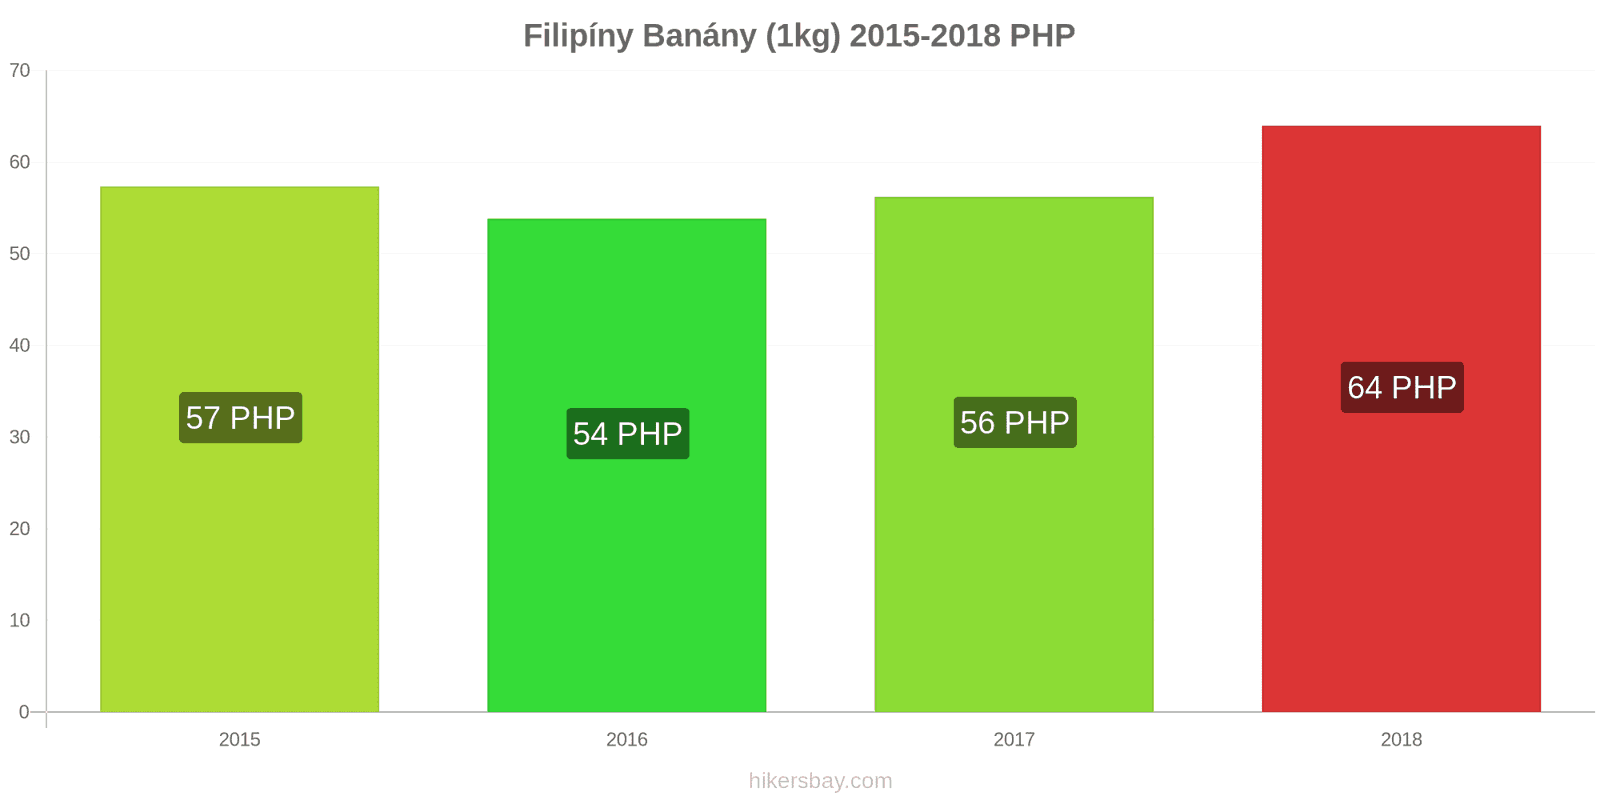 Filipíny změny cen Banány (1kg) hikersbay.com